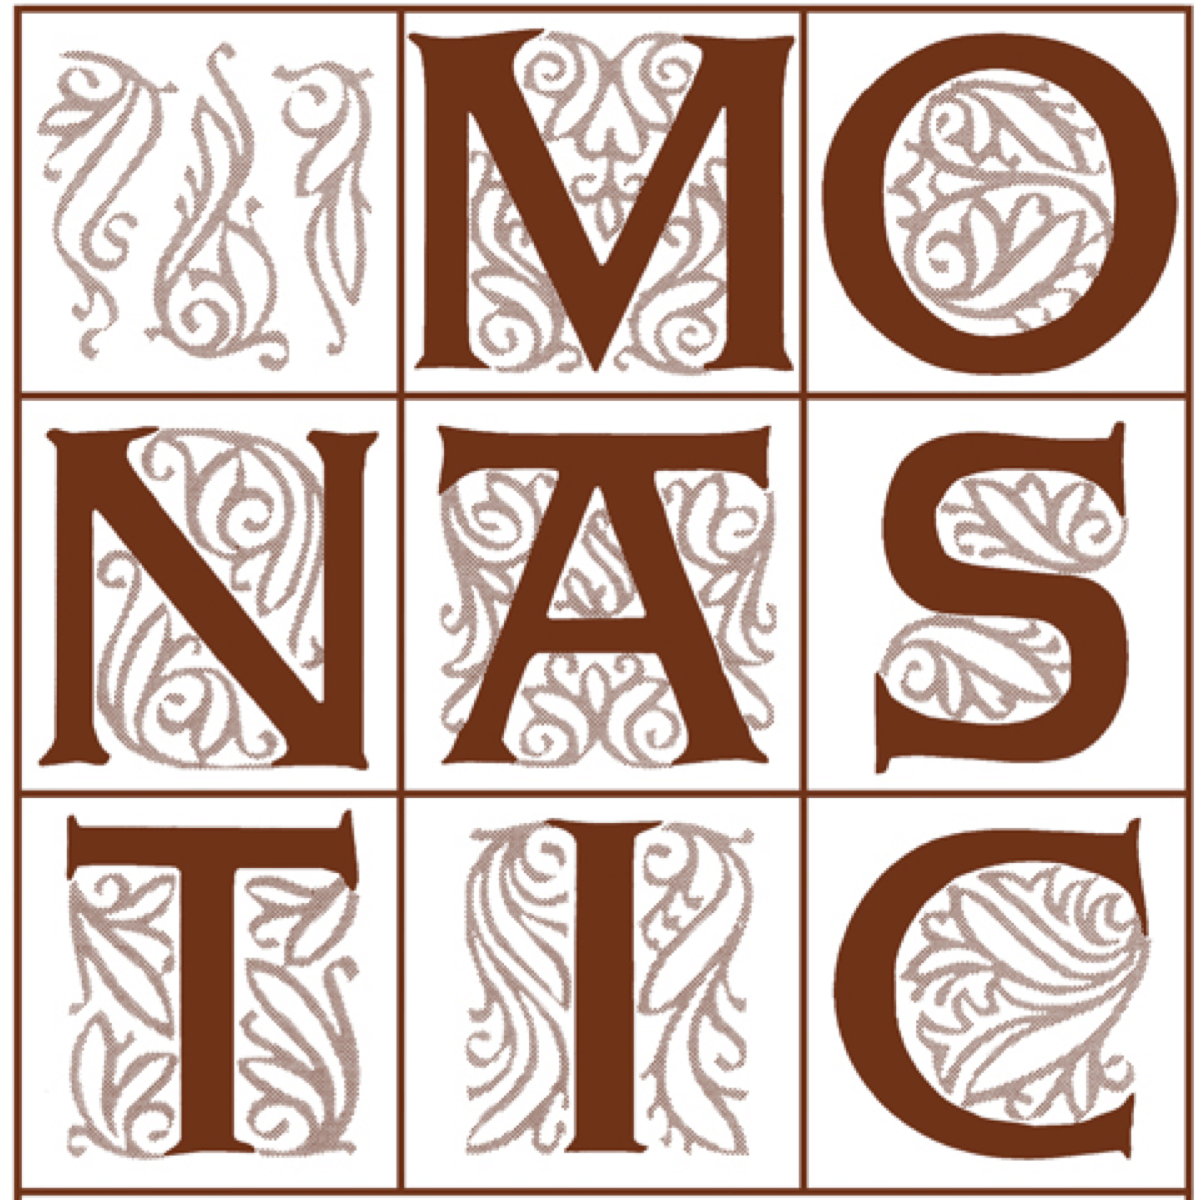 Le logo "Monastic" garantit que le produit a bien été produit par les moines de l'abbaye – Divine Box